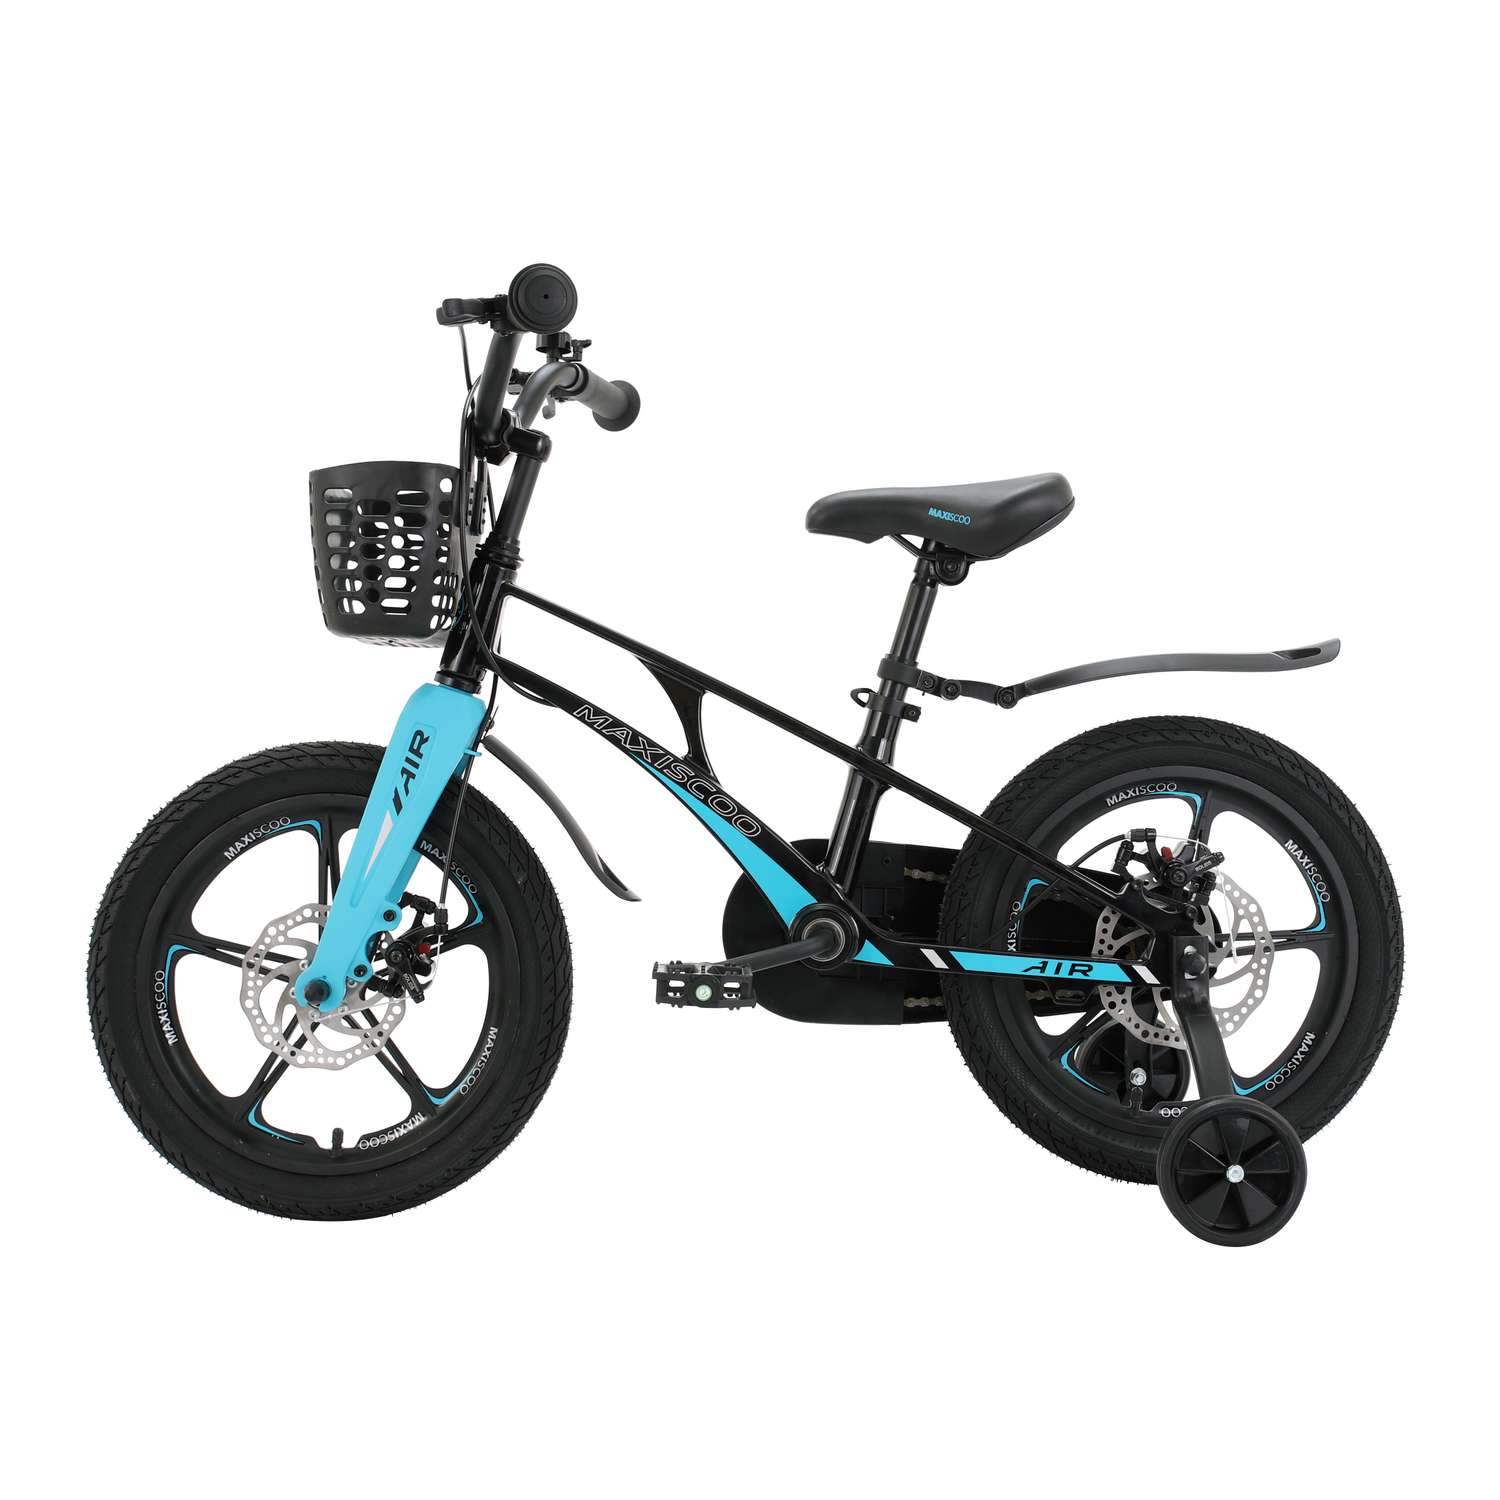 Детский двухколесный велосипед Maxiscoo Airделюкс плюс 16 черный аметист - фото 2